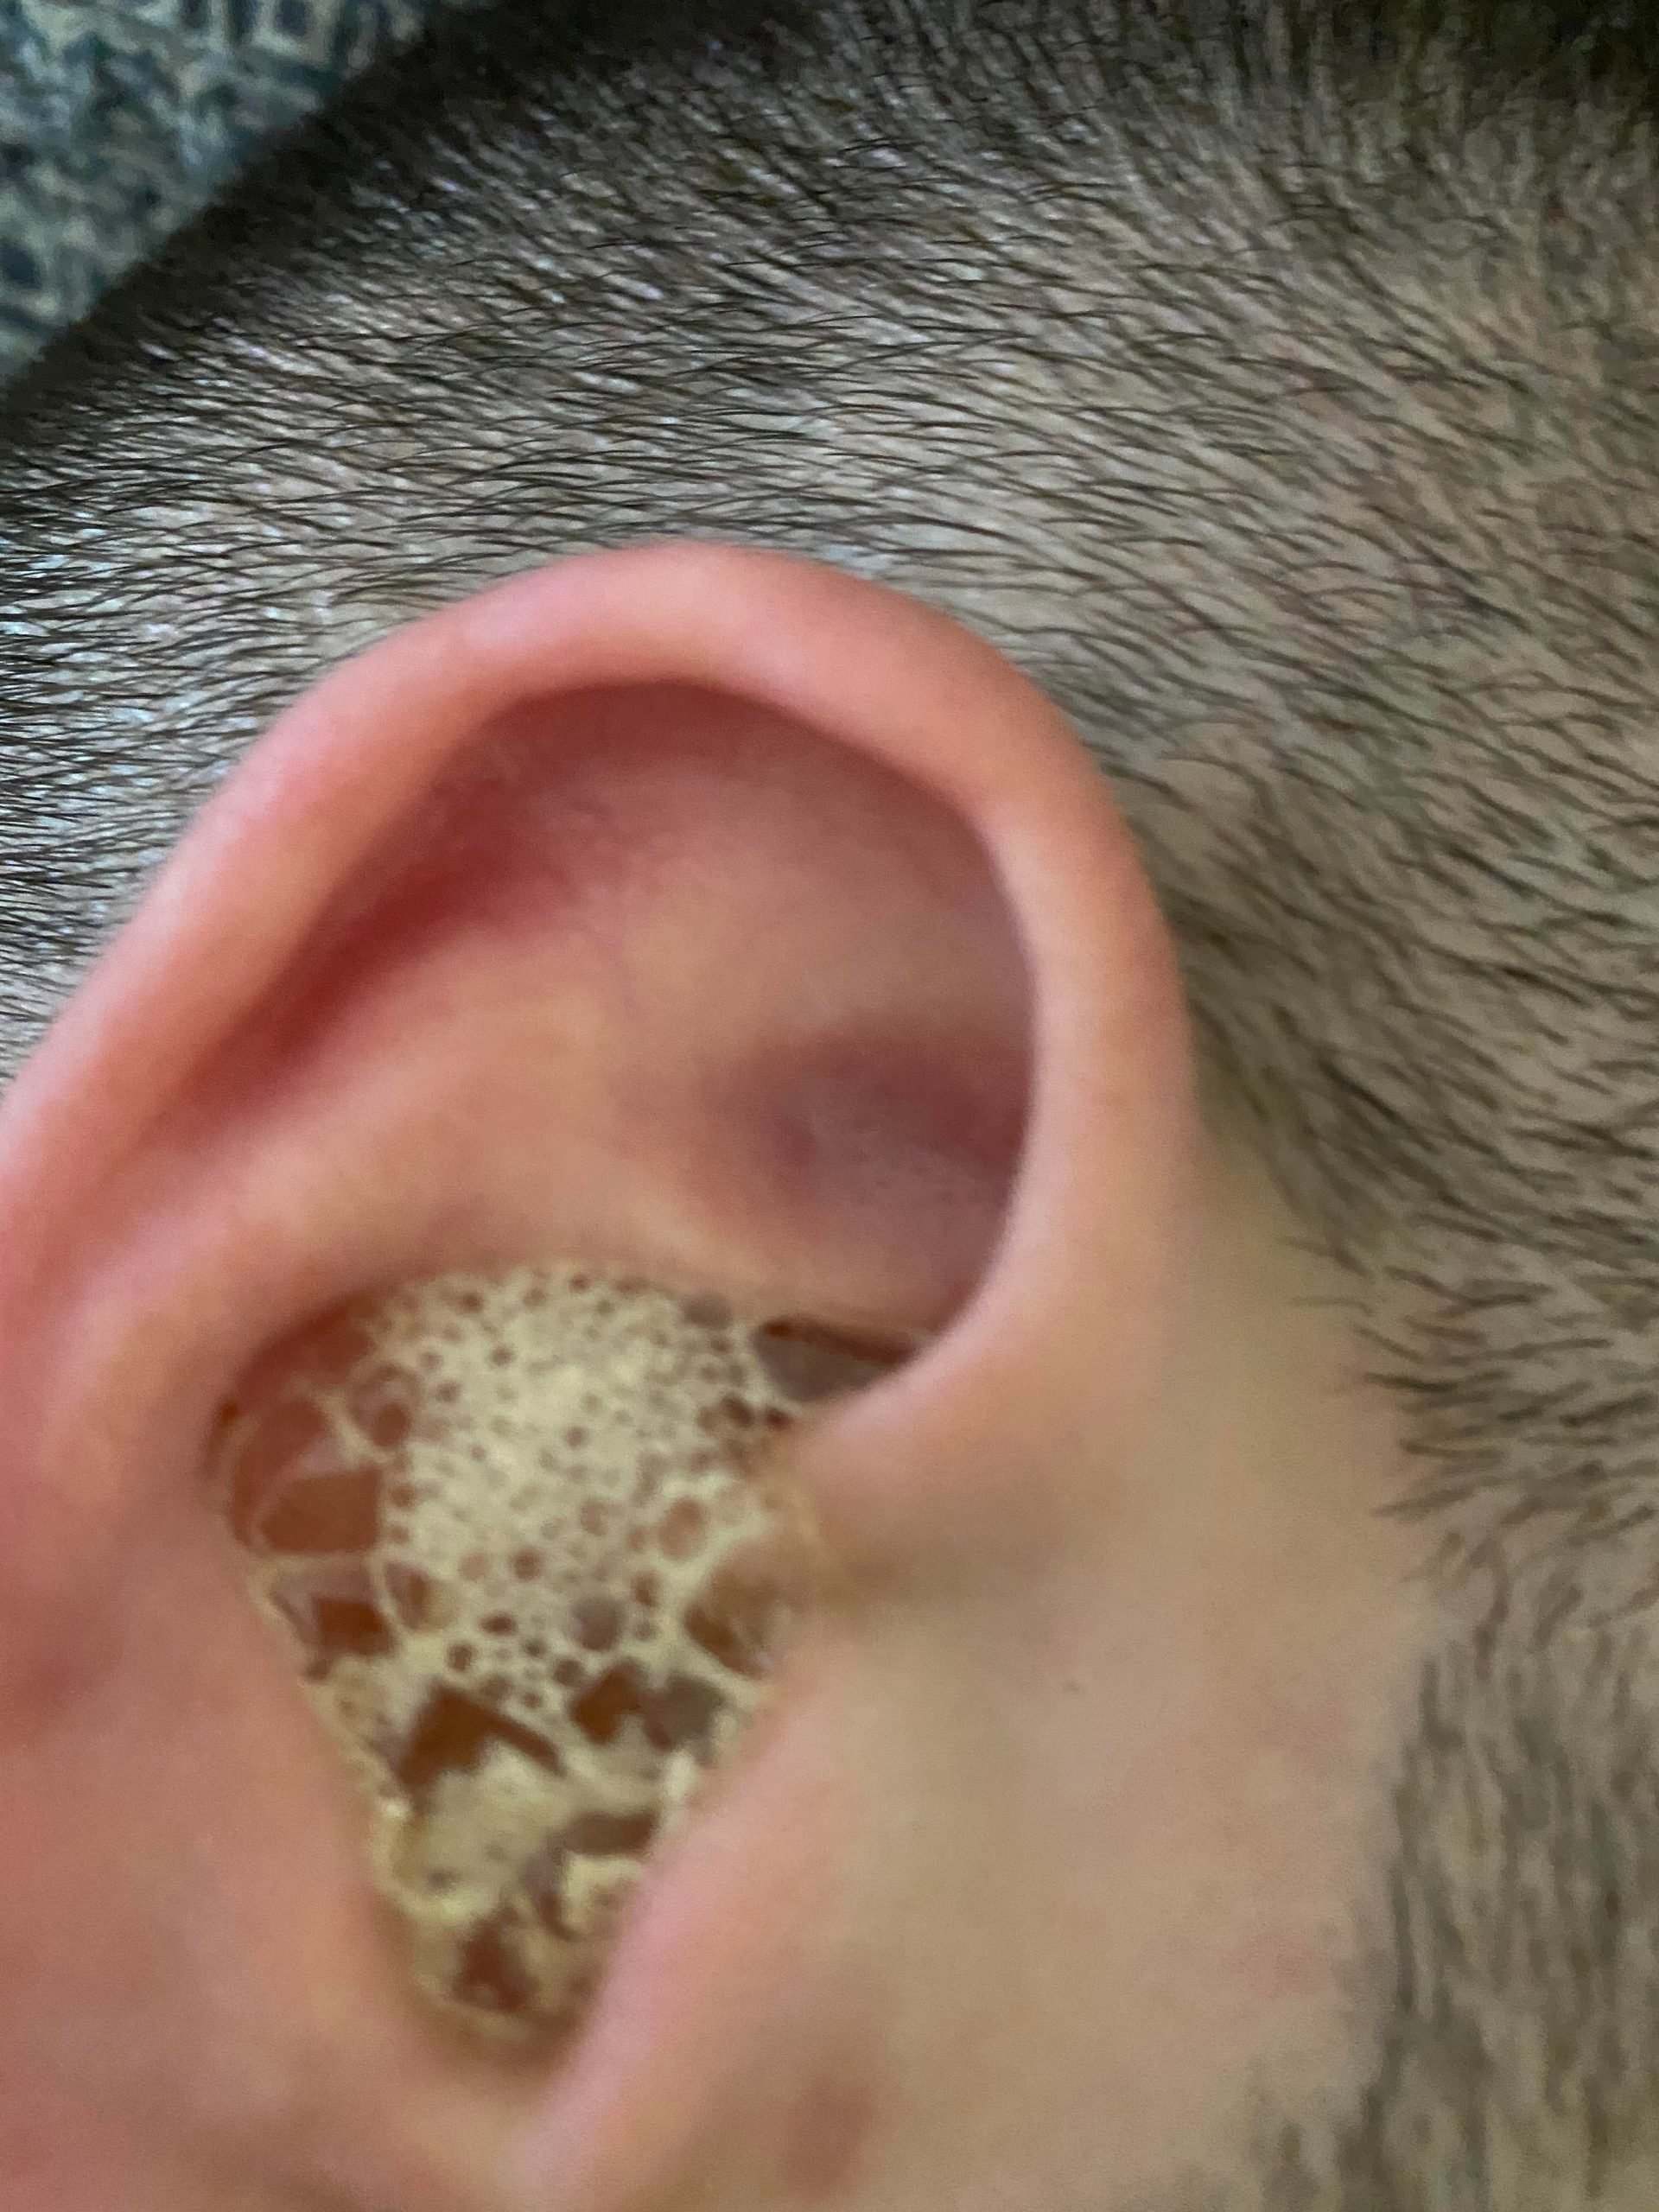 Blocked ear + Peroxide : earwax